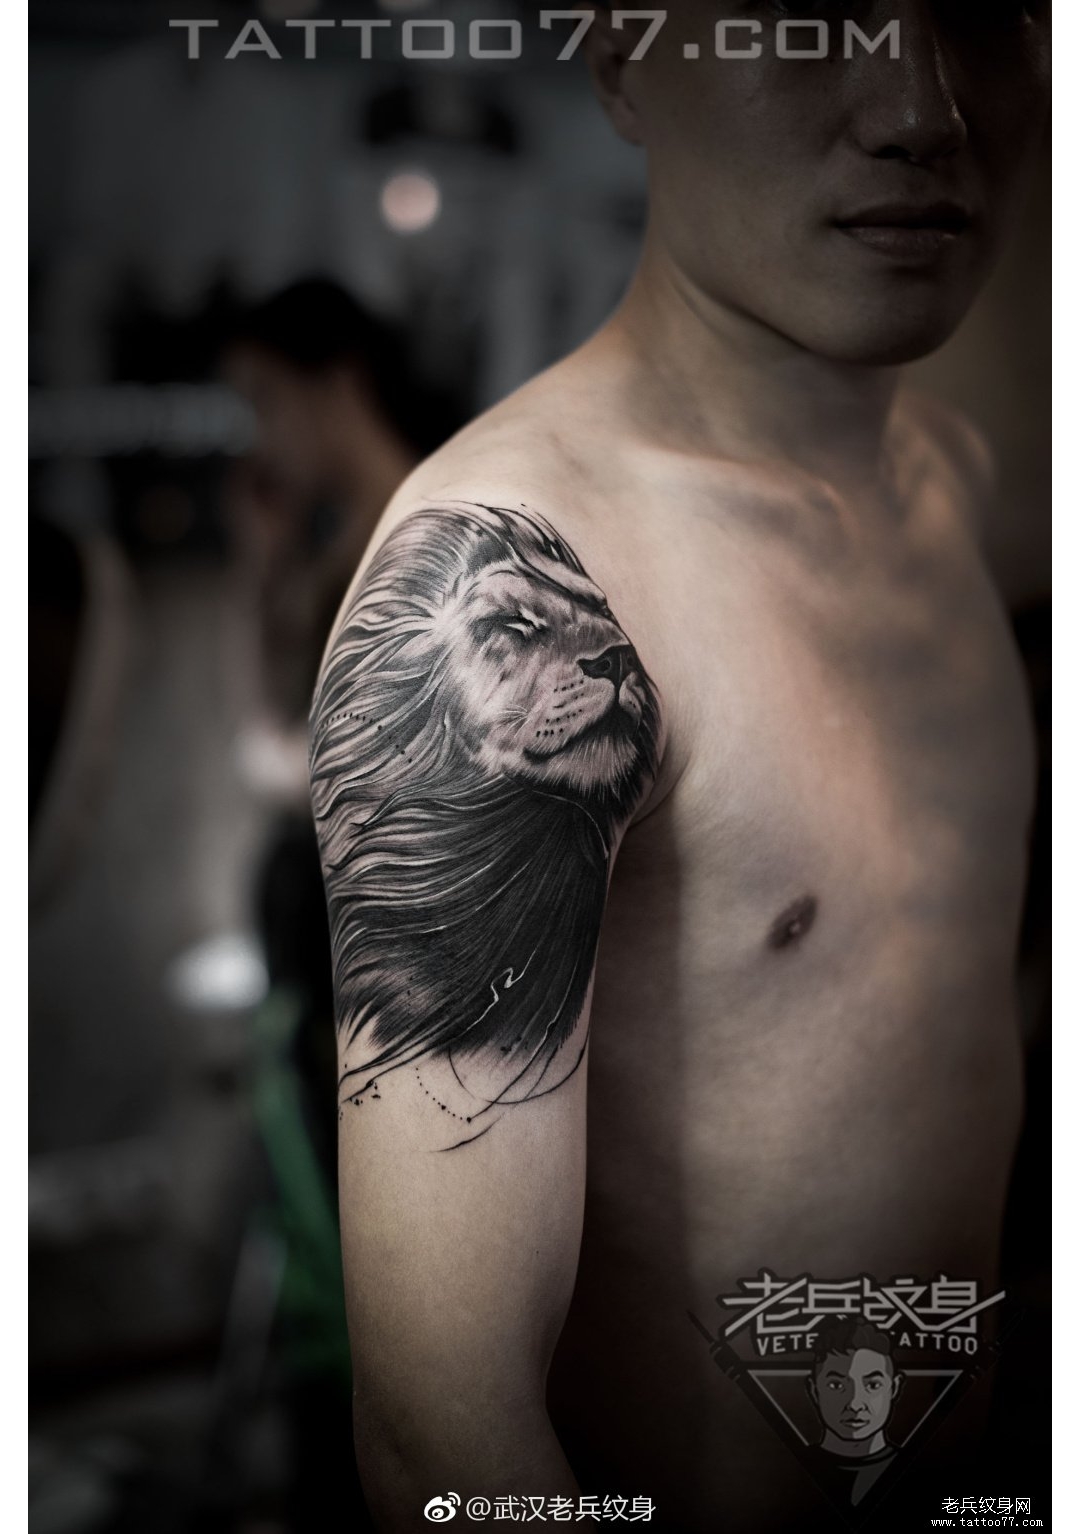 大臂黑色素描写实狮子纹身图案作品